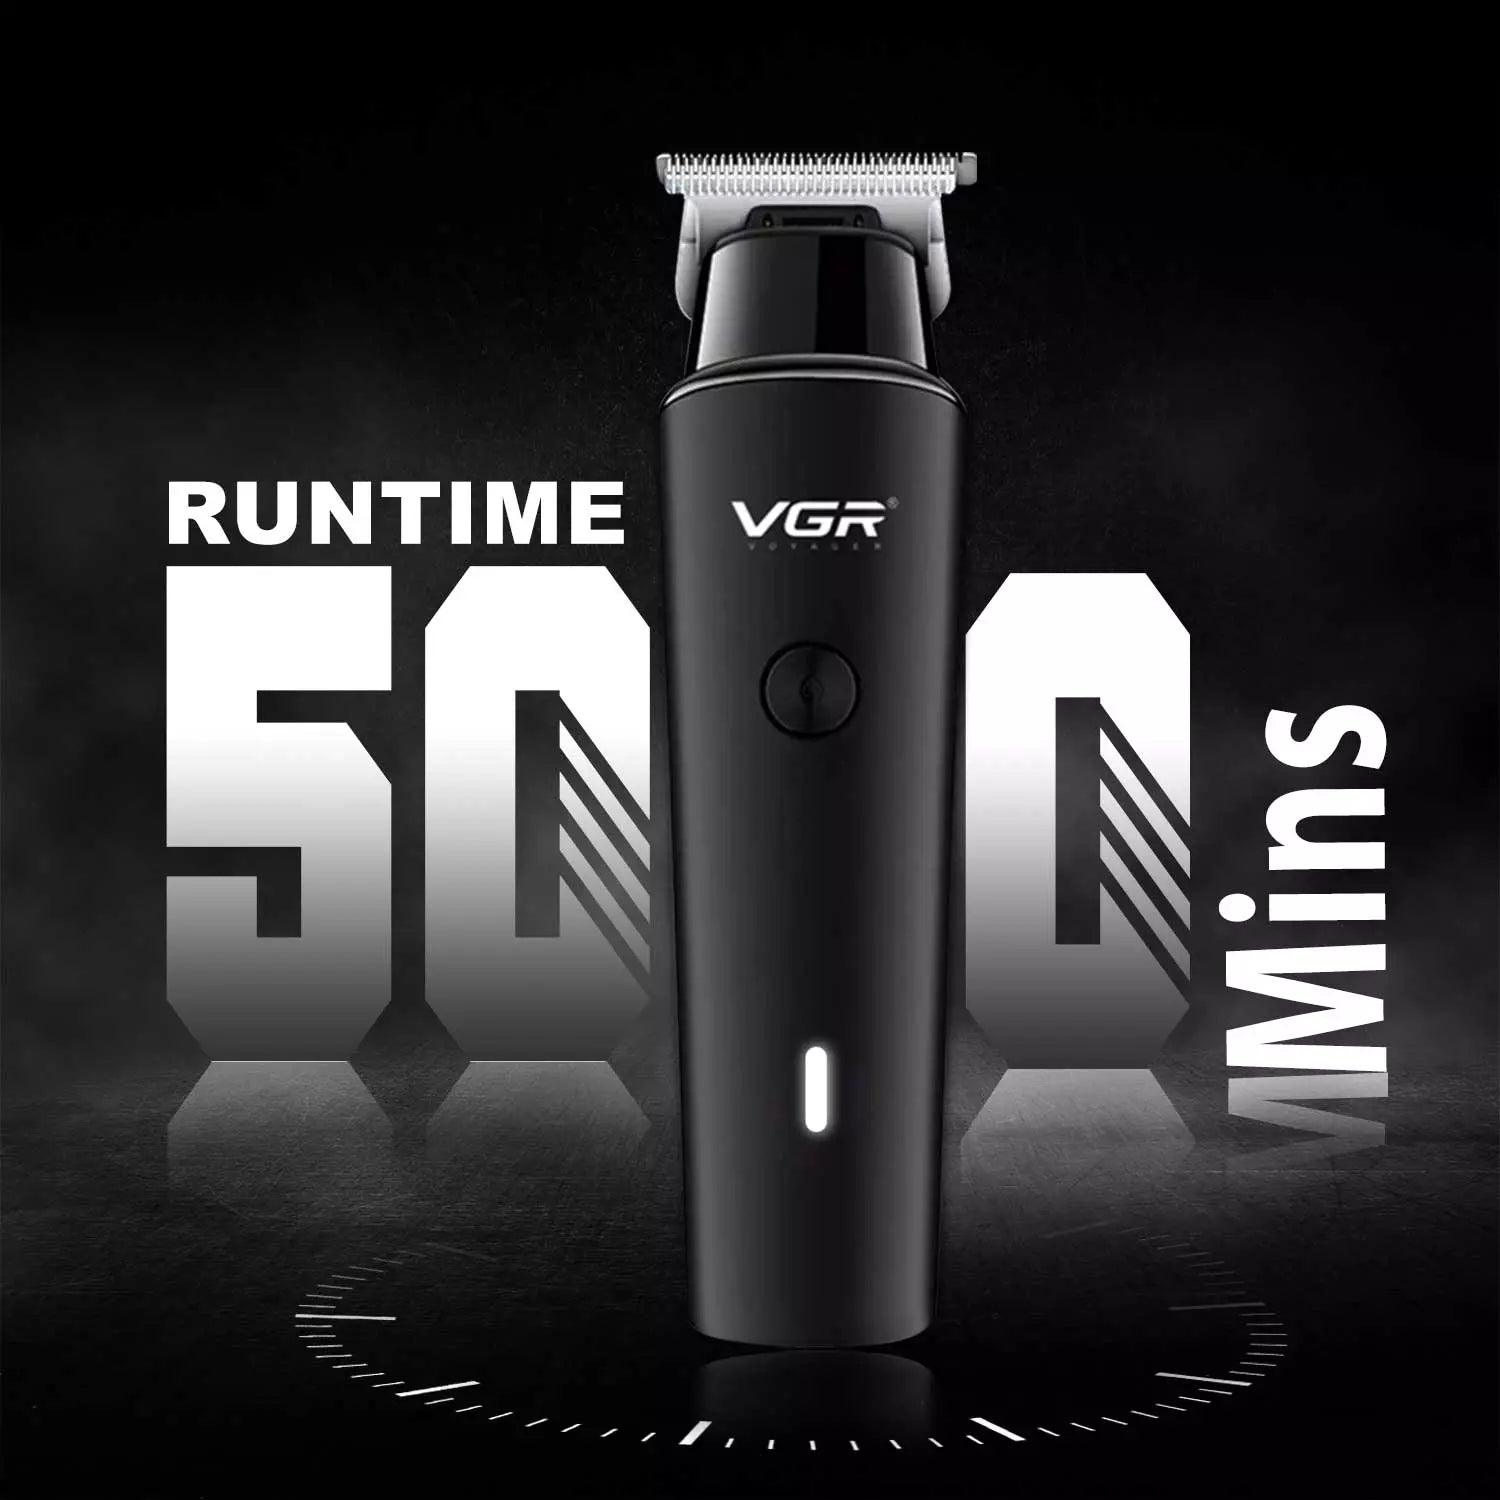 VGR V-933 Hair Trimmer For Men, Black